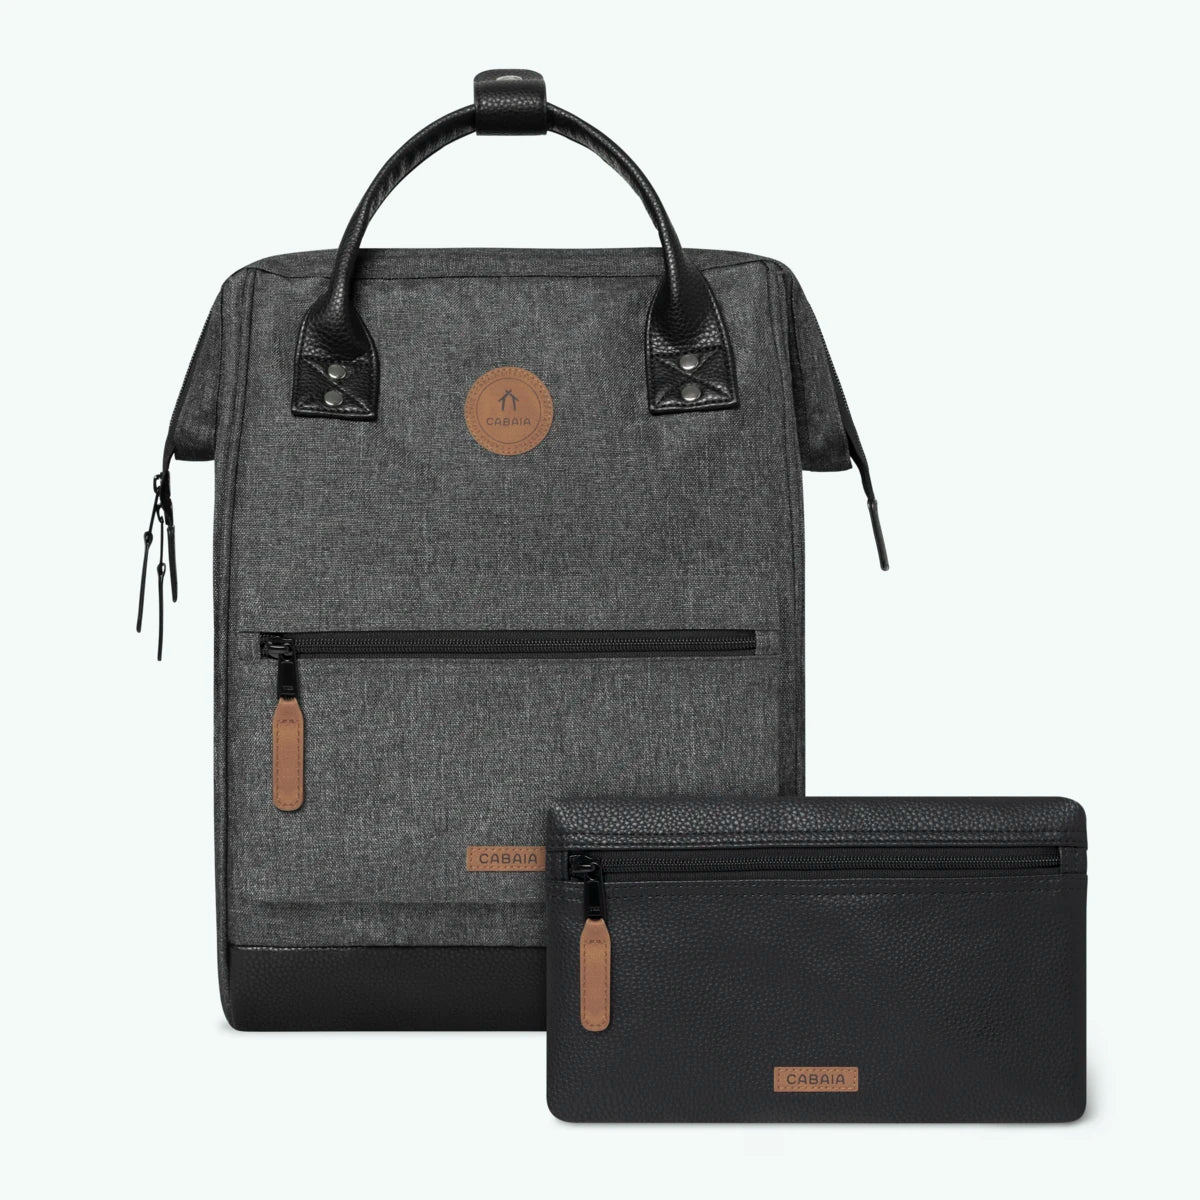 Adventurer dark grey - Medium - Backpack